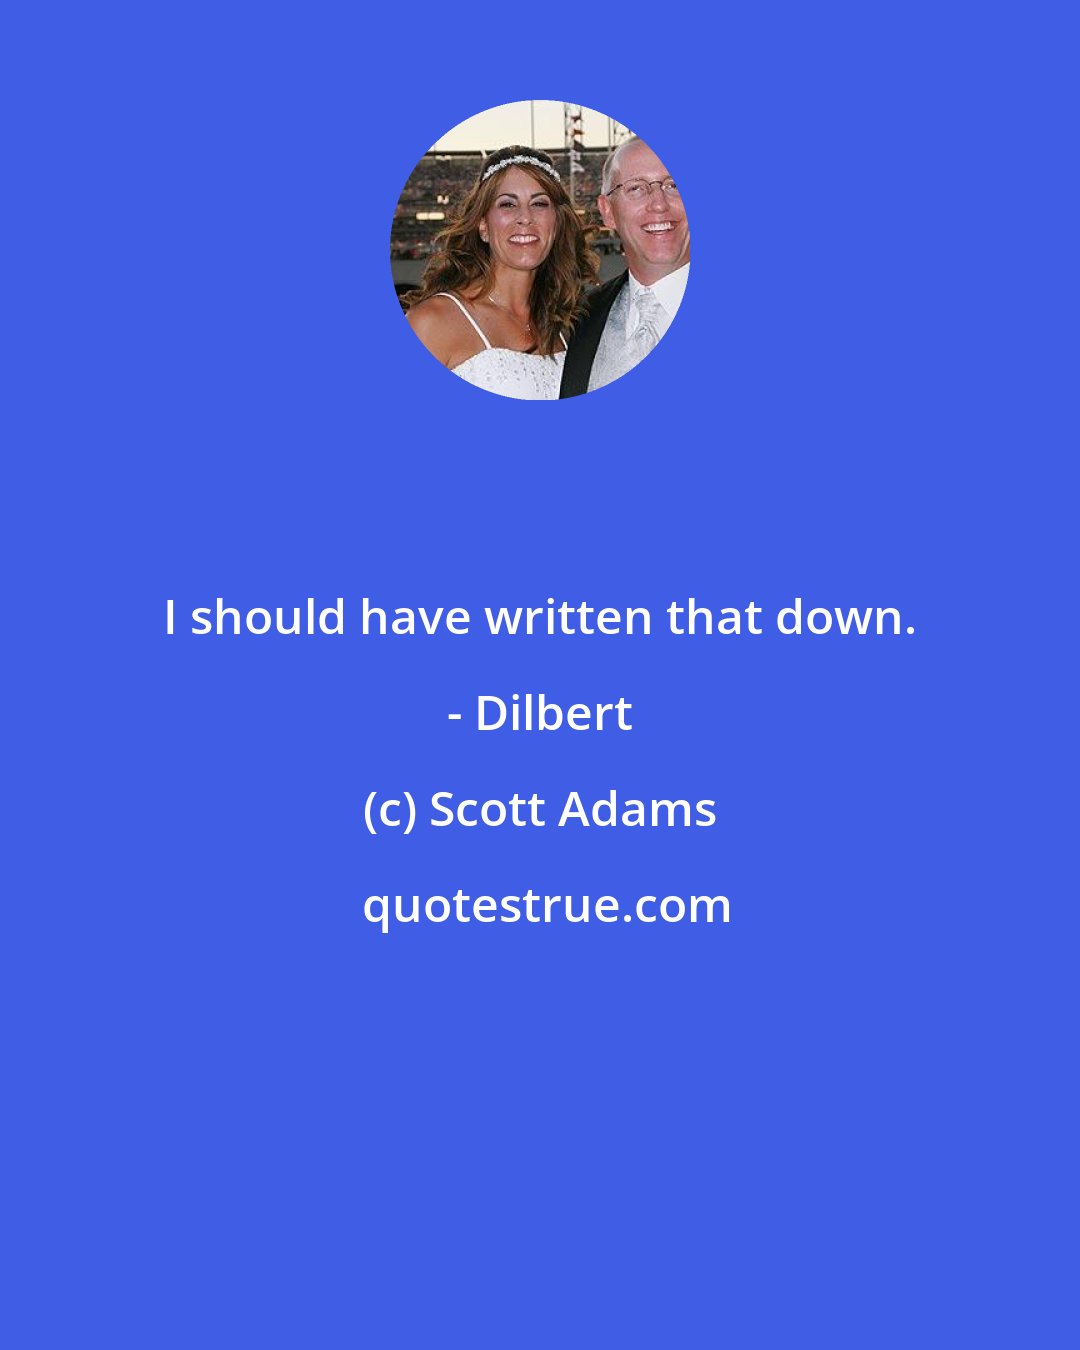 Scott Adams: I should have written that down. - Dilbert